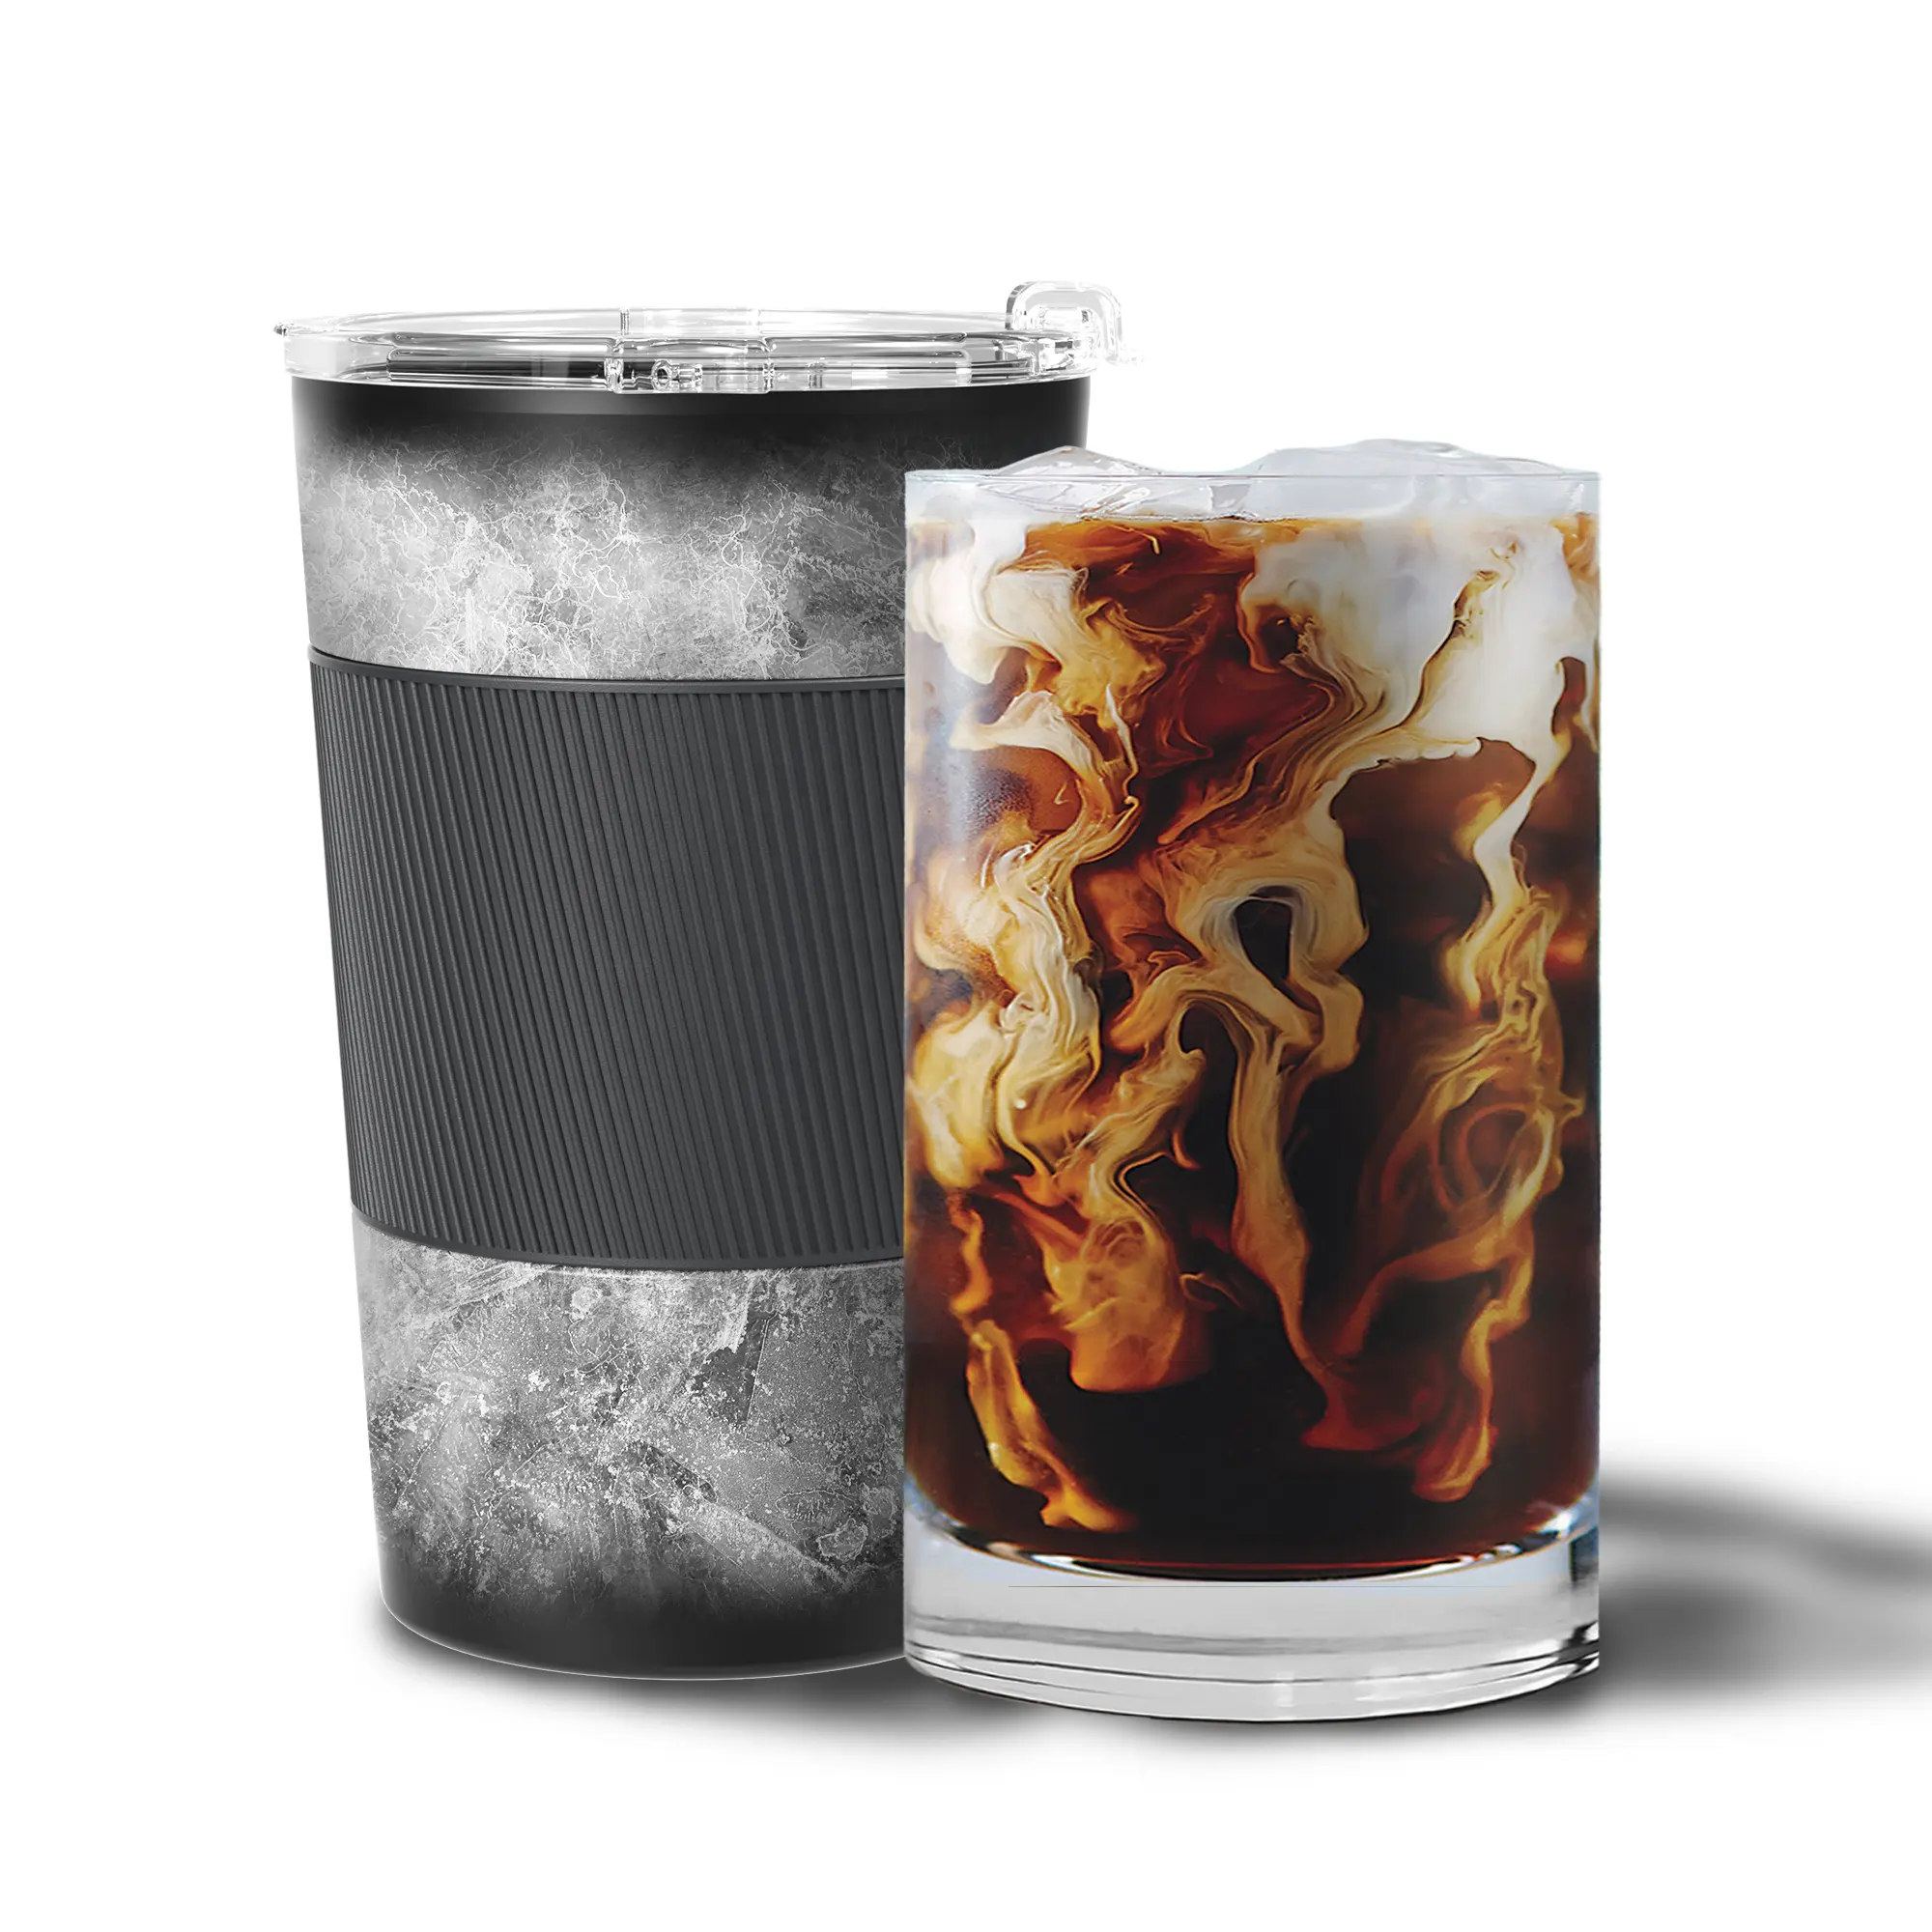 ماكينة تبريد مشروبات من الفولاذ المقاوم للصدأ 12 أونصة حاصلة على براءة اختراع من Reekoos مبرد بارد كوب قهوة مبردة لصانعي المشروبات